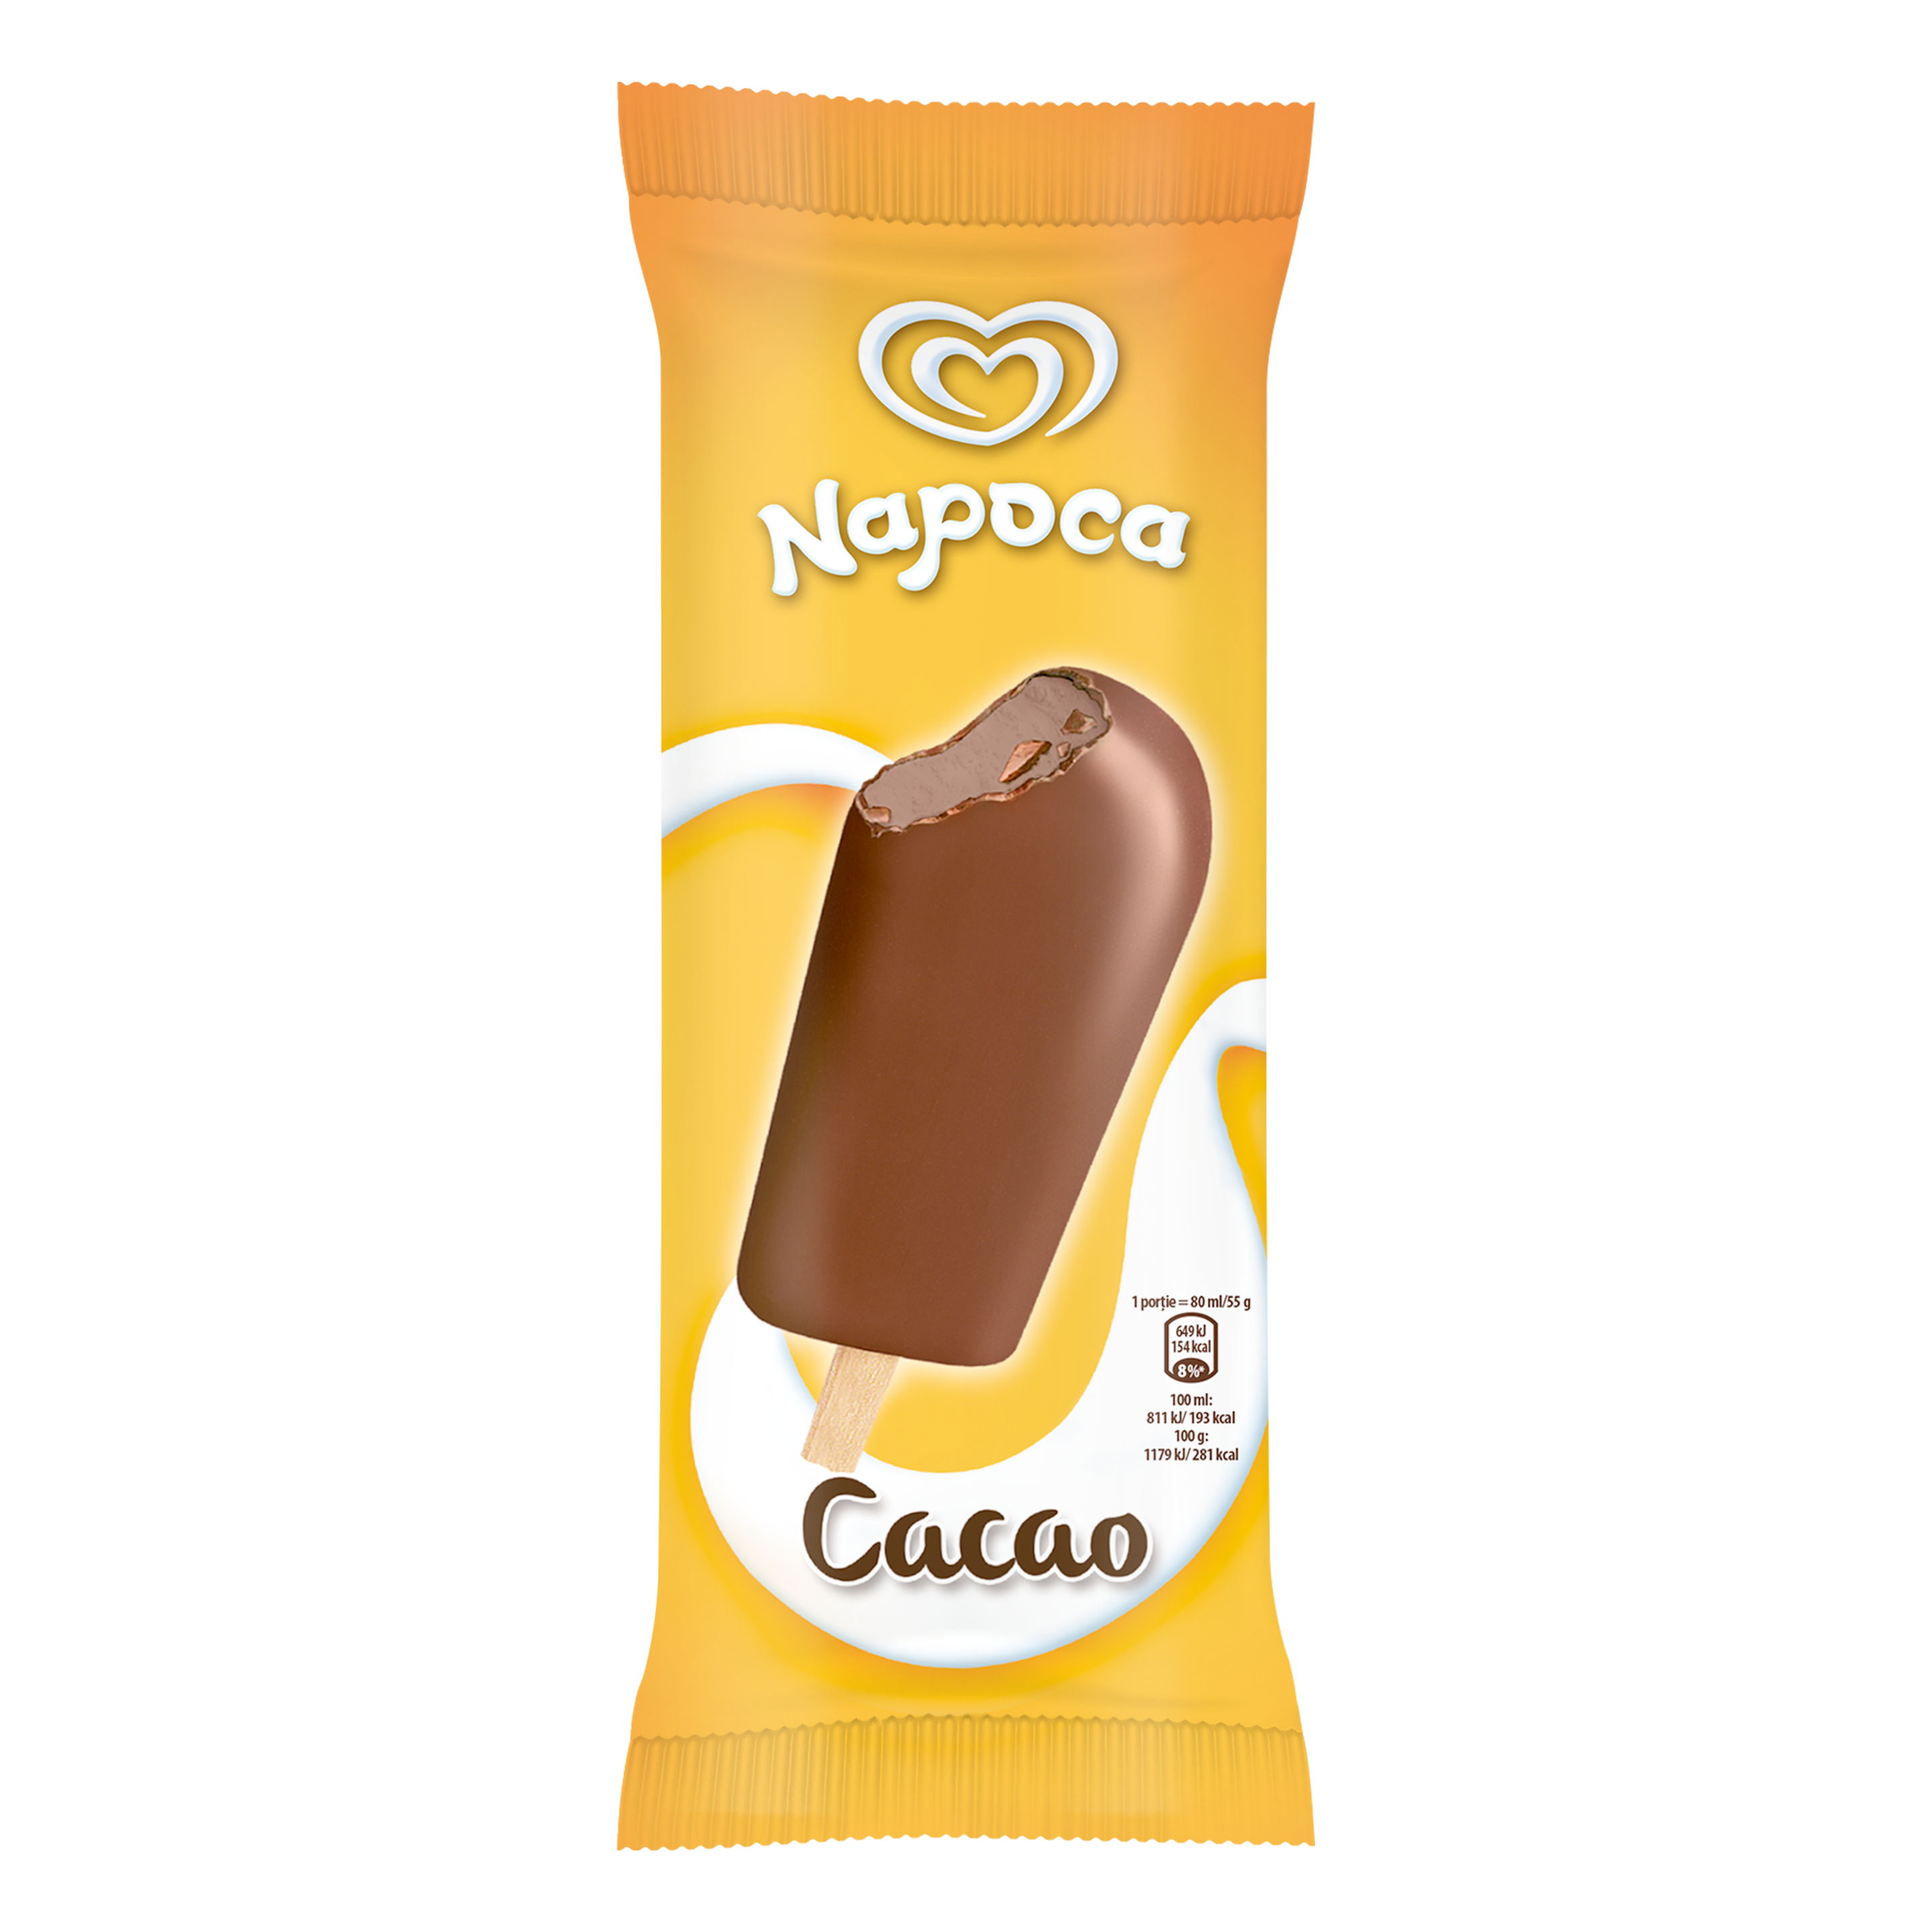 Napoca Cacao 55g